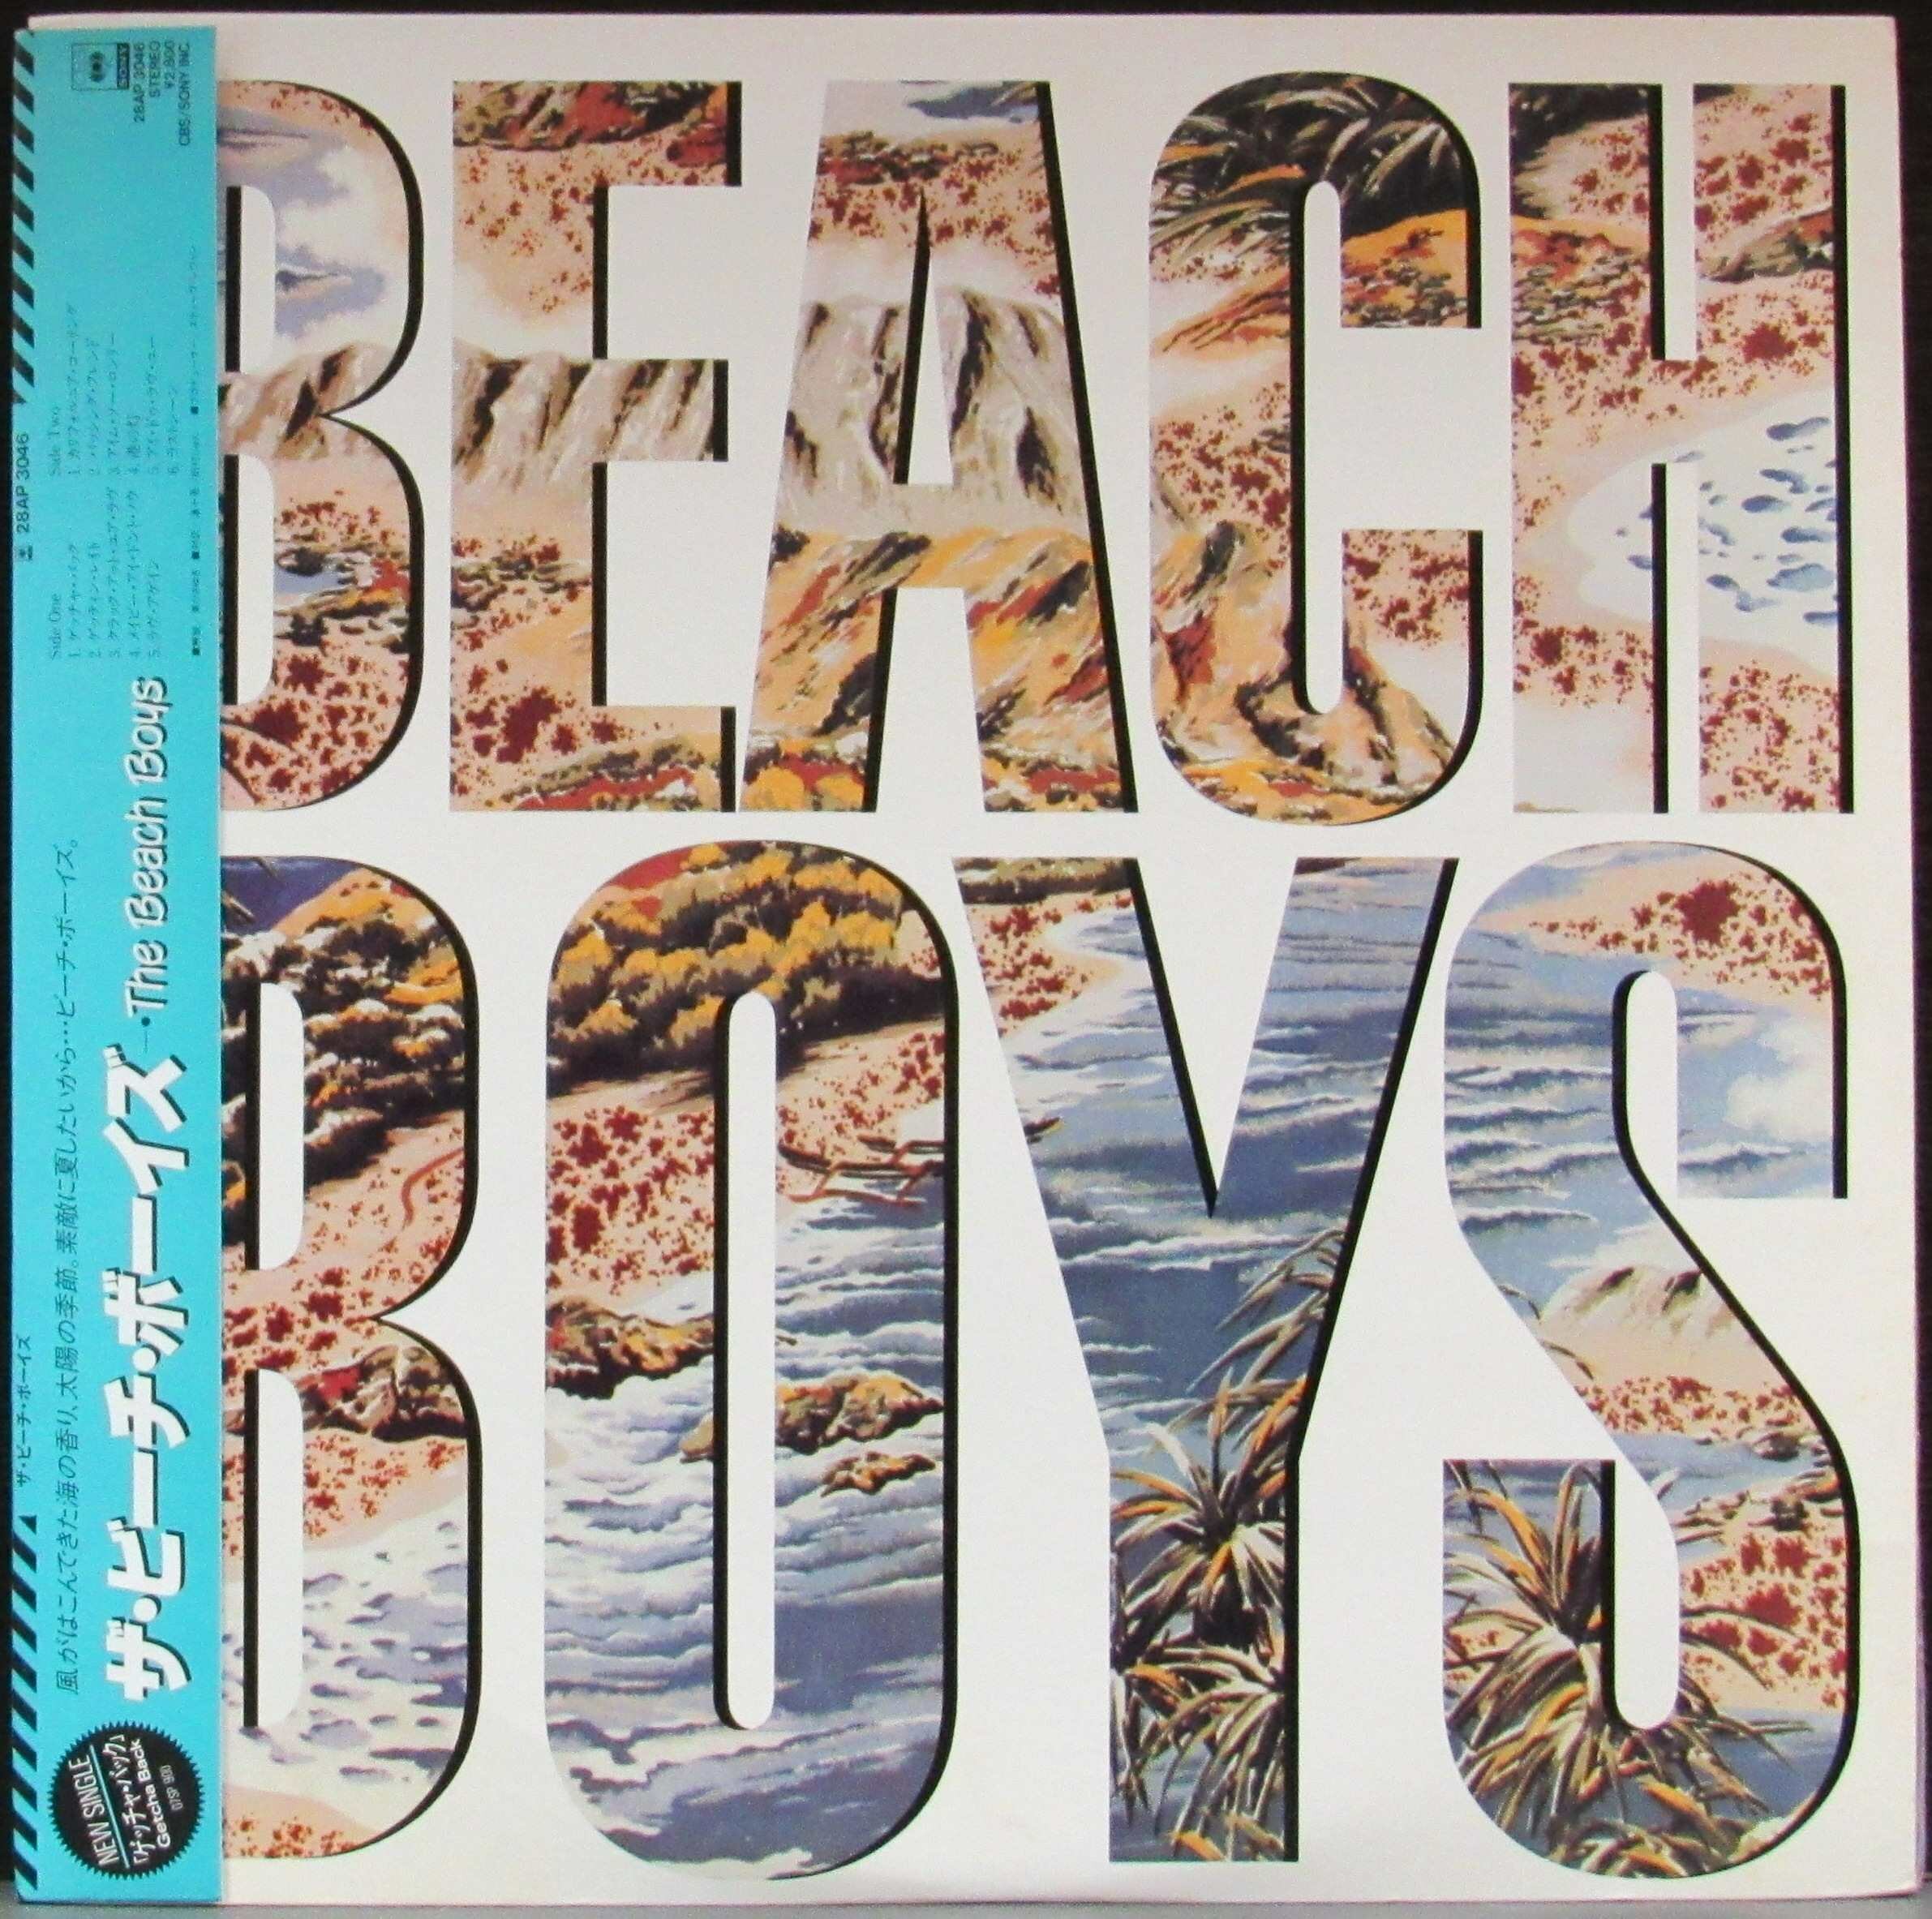 Beach Boys "Виниловая пластинка Beach Boys Beach Boys"